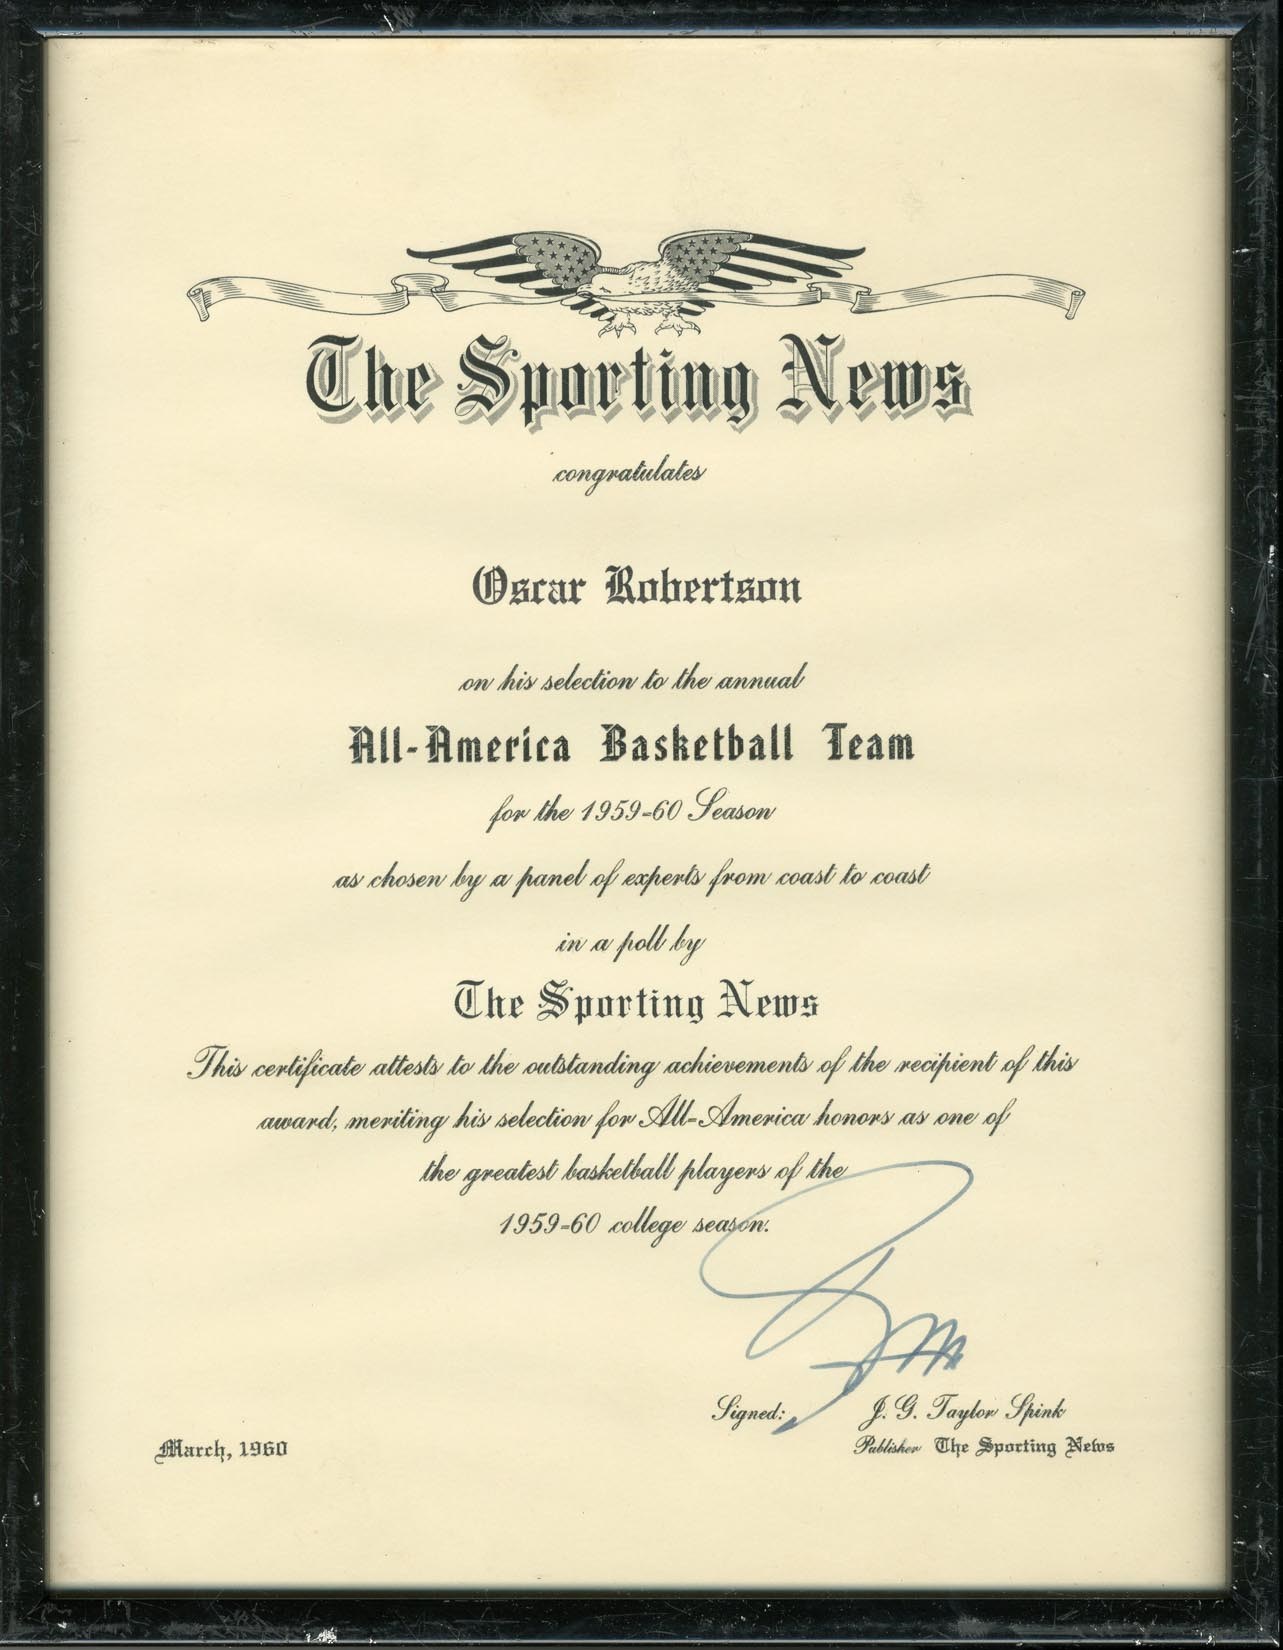 The Oscar Robertson Collection - 1959-60 Oscar Robertson All-American Basketball Team Certificate